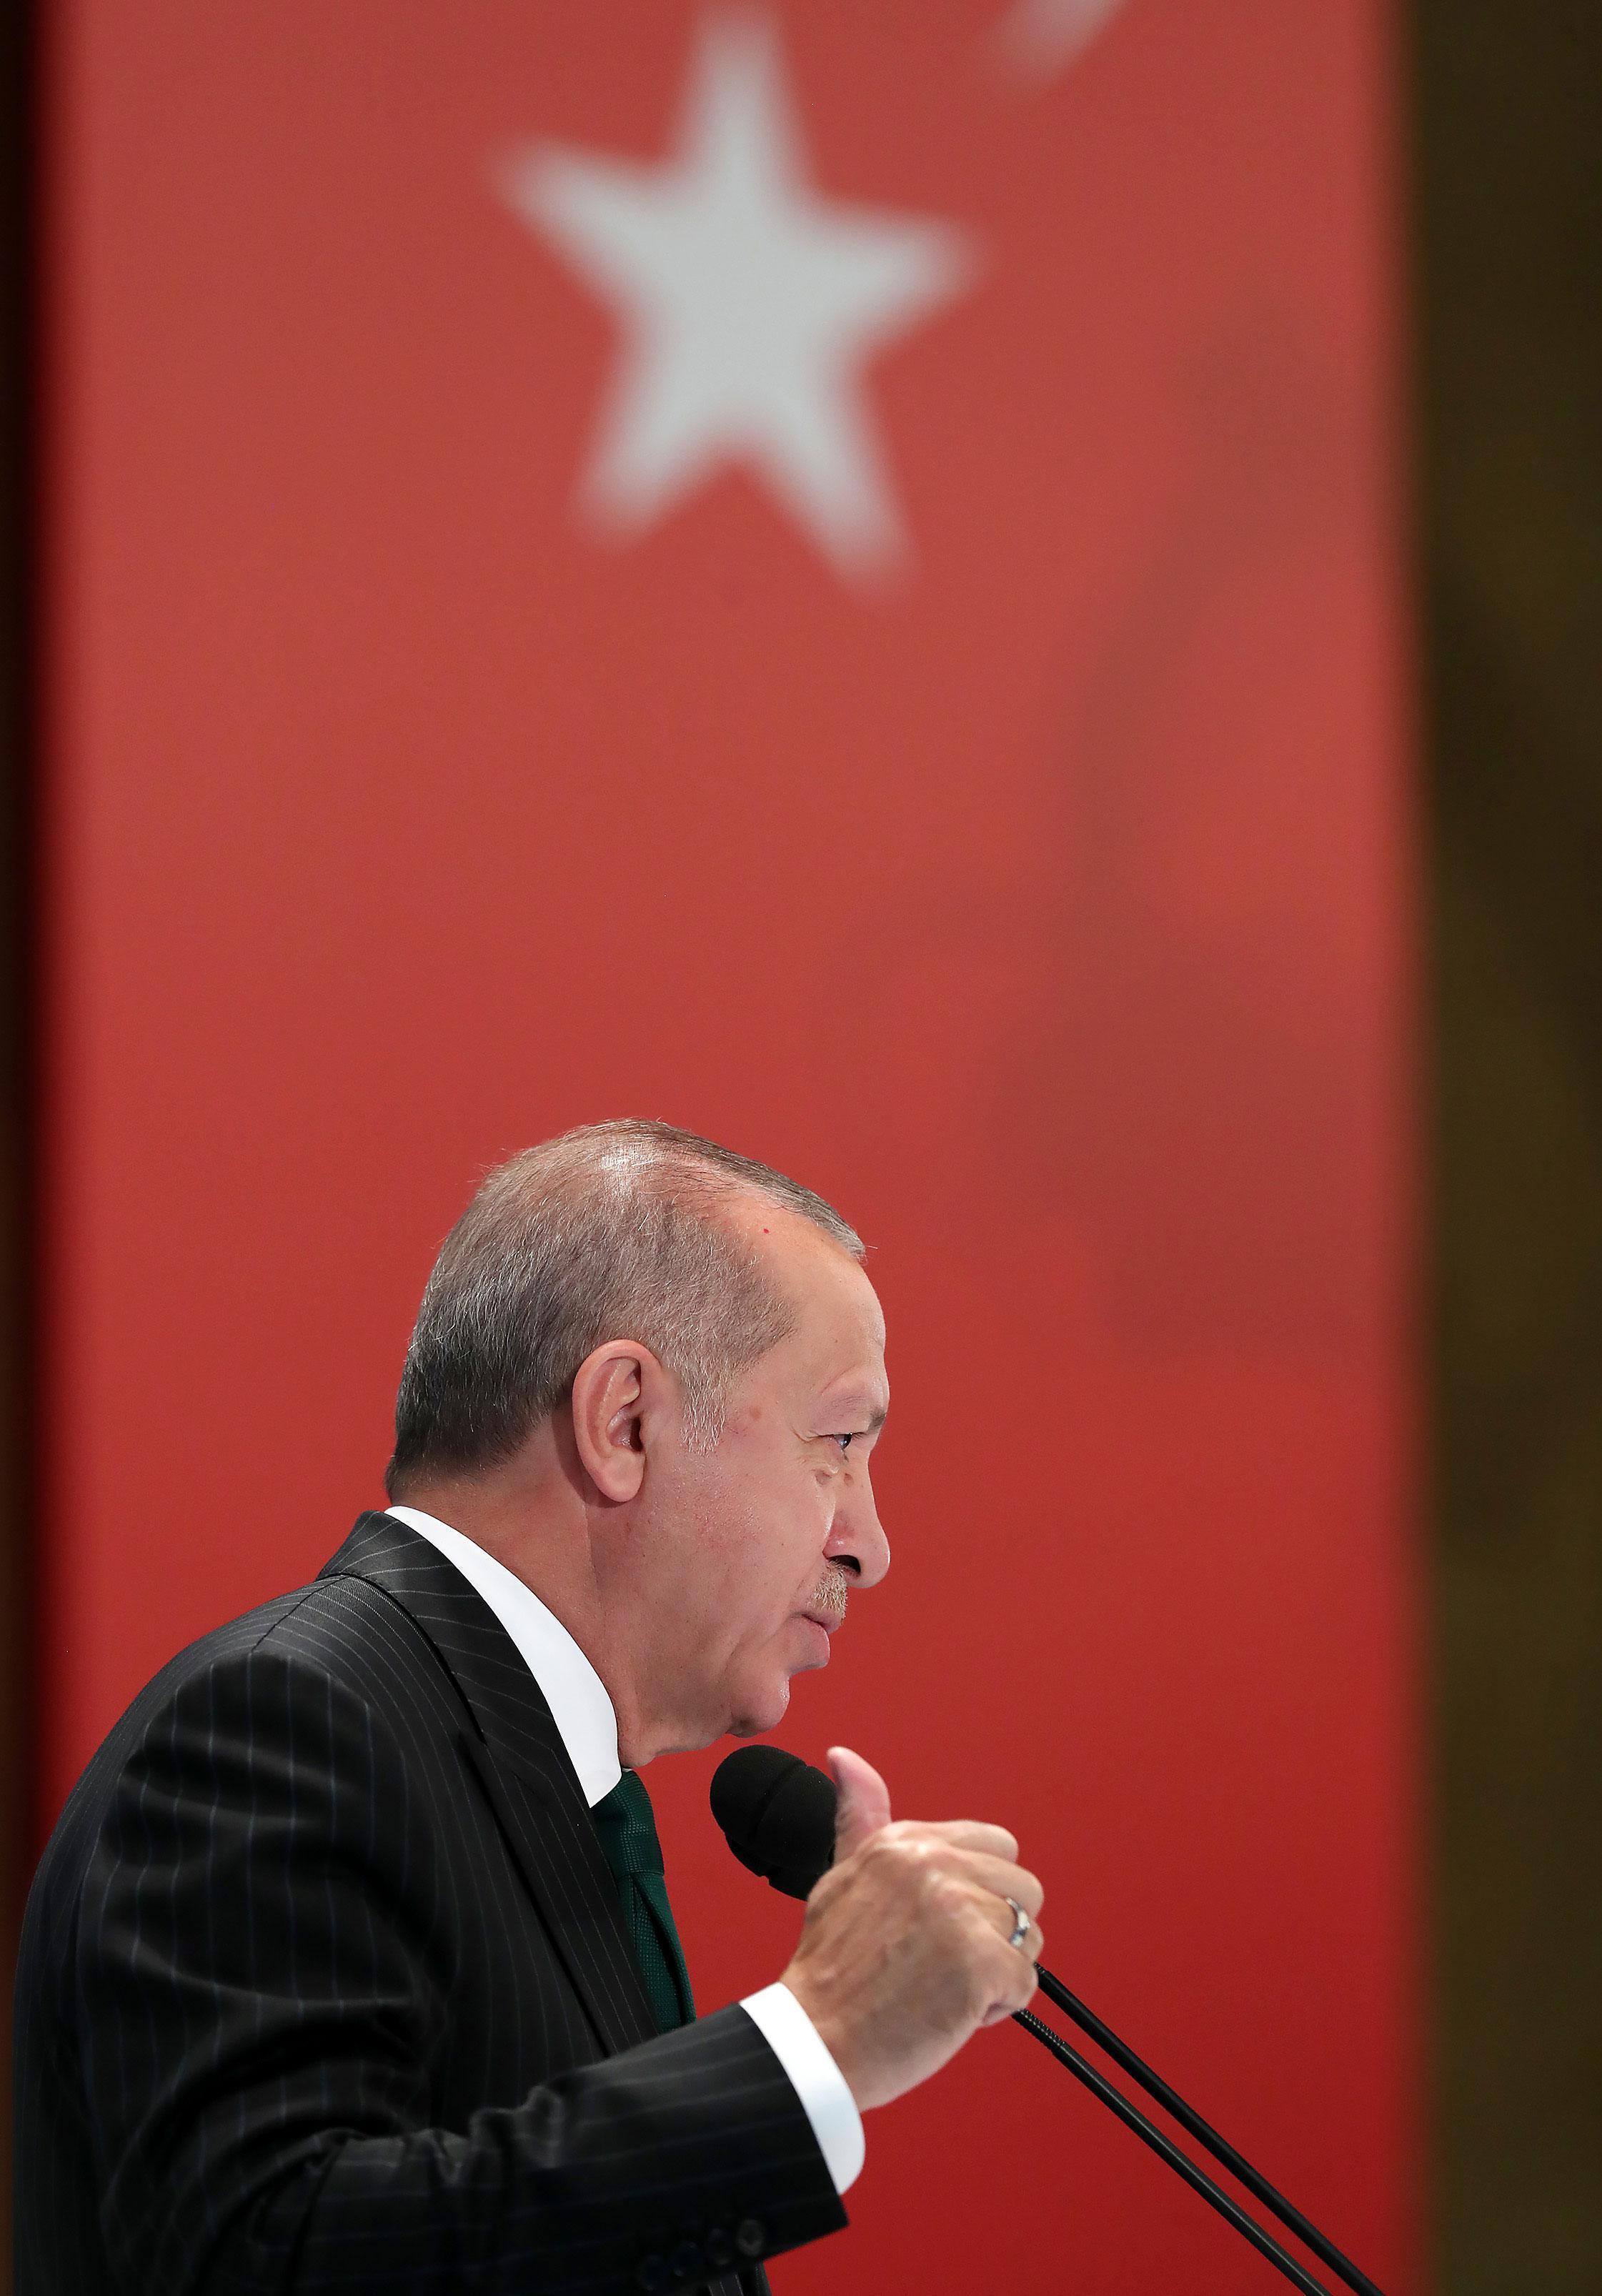 Cumhurbaşkanı Erdoğandan Kızılcahamamda önemli açıklamalar